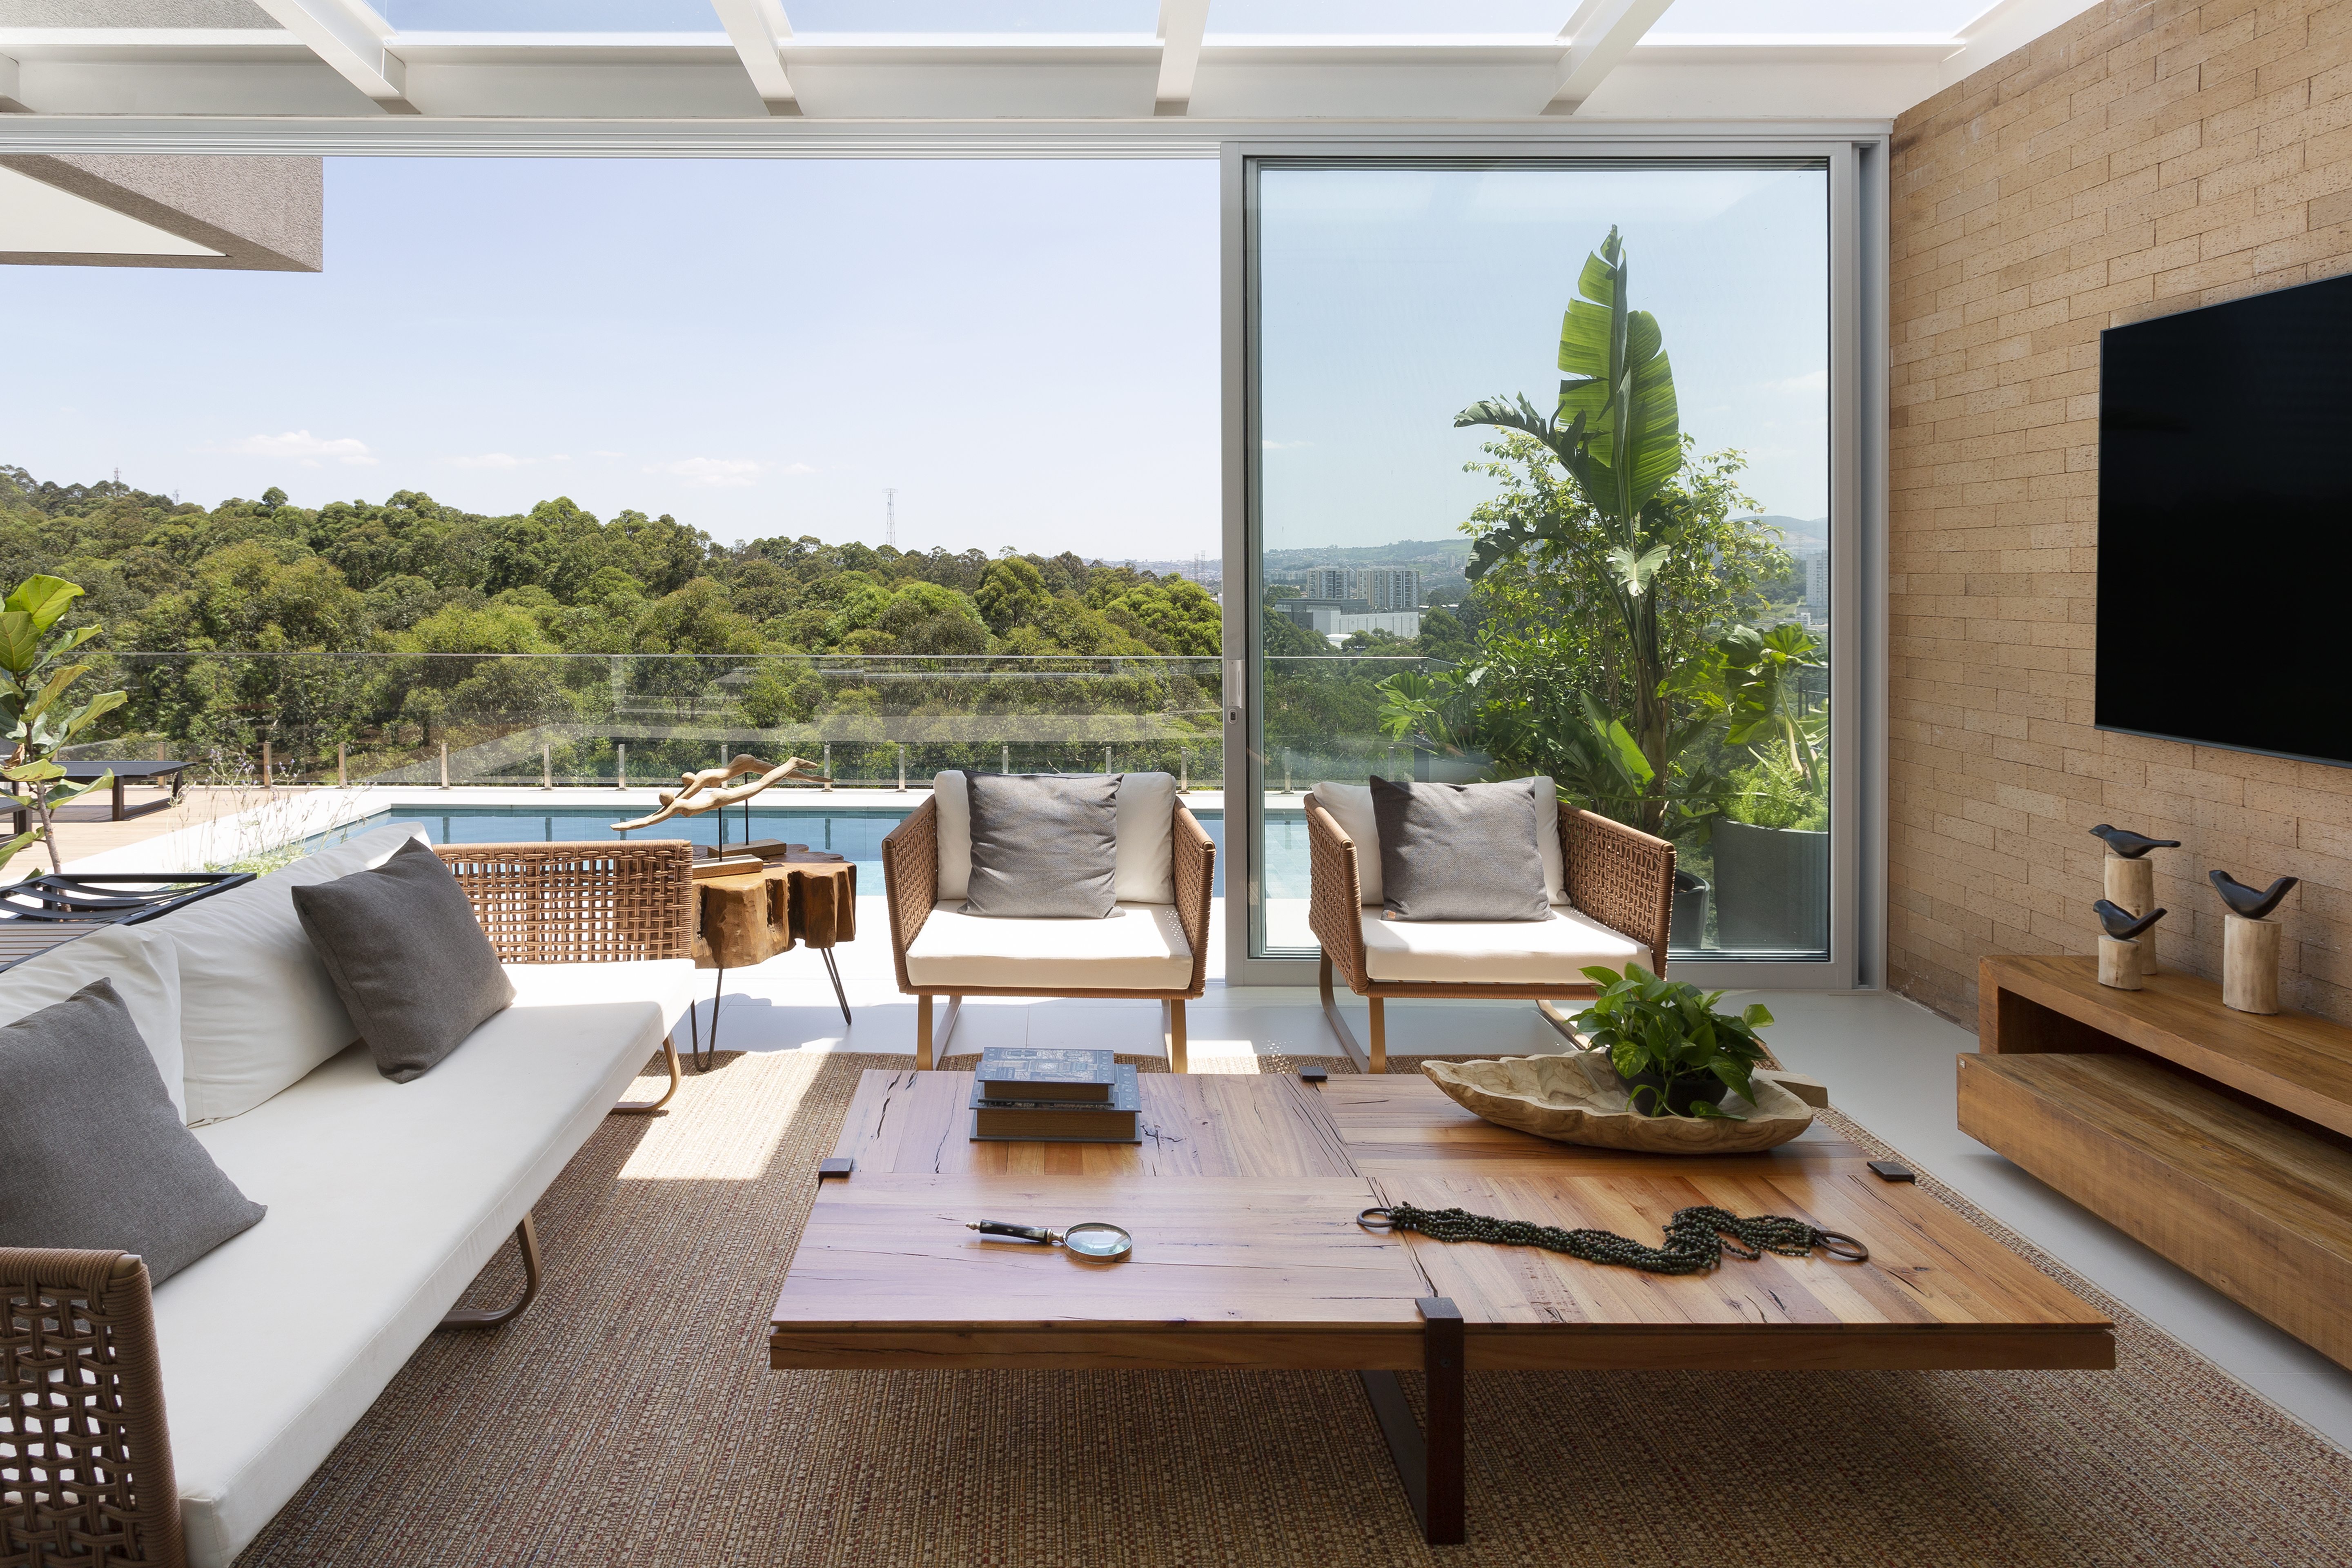 Casa de 580 m² destaca paisagem e valoriza a natureza